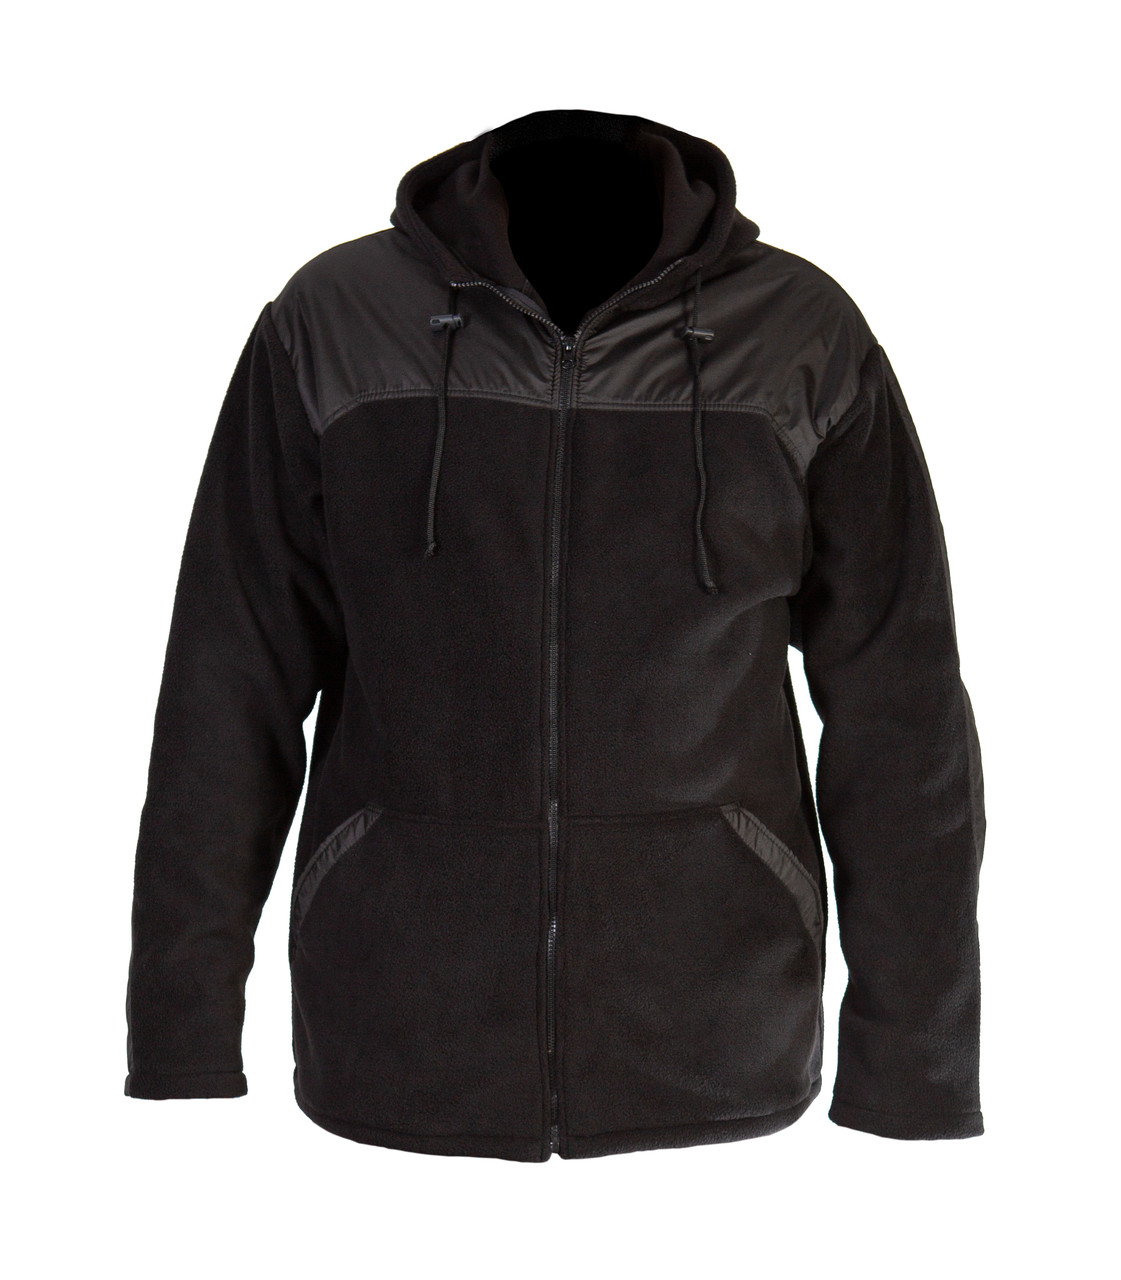 Куртка из флиса на молнии, размер L, цвет черный